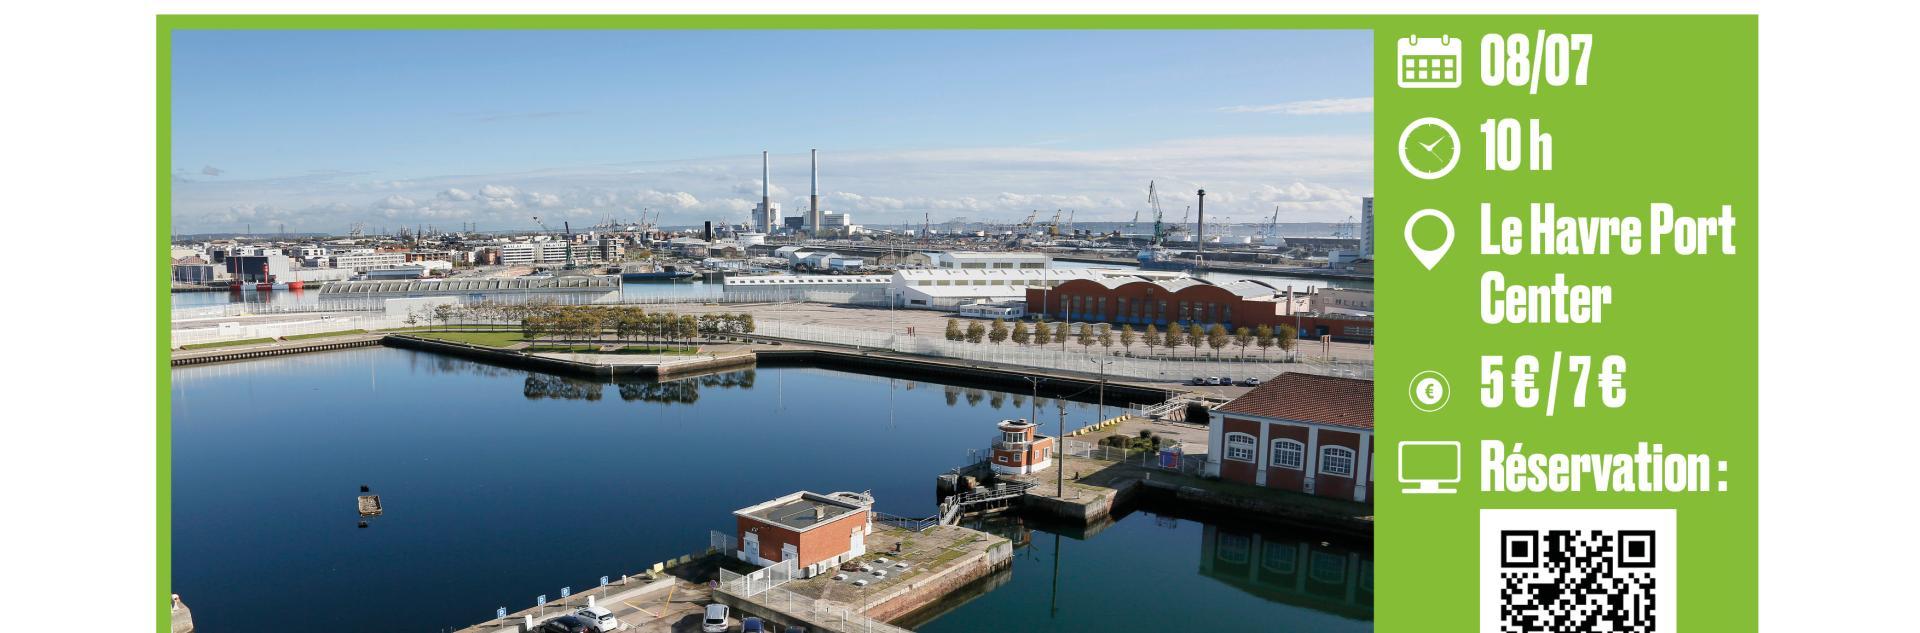 Randonnée portuaire : Regards croisés sur le paysage portuaire du Havre - LH Port Center